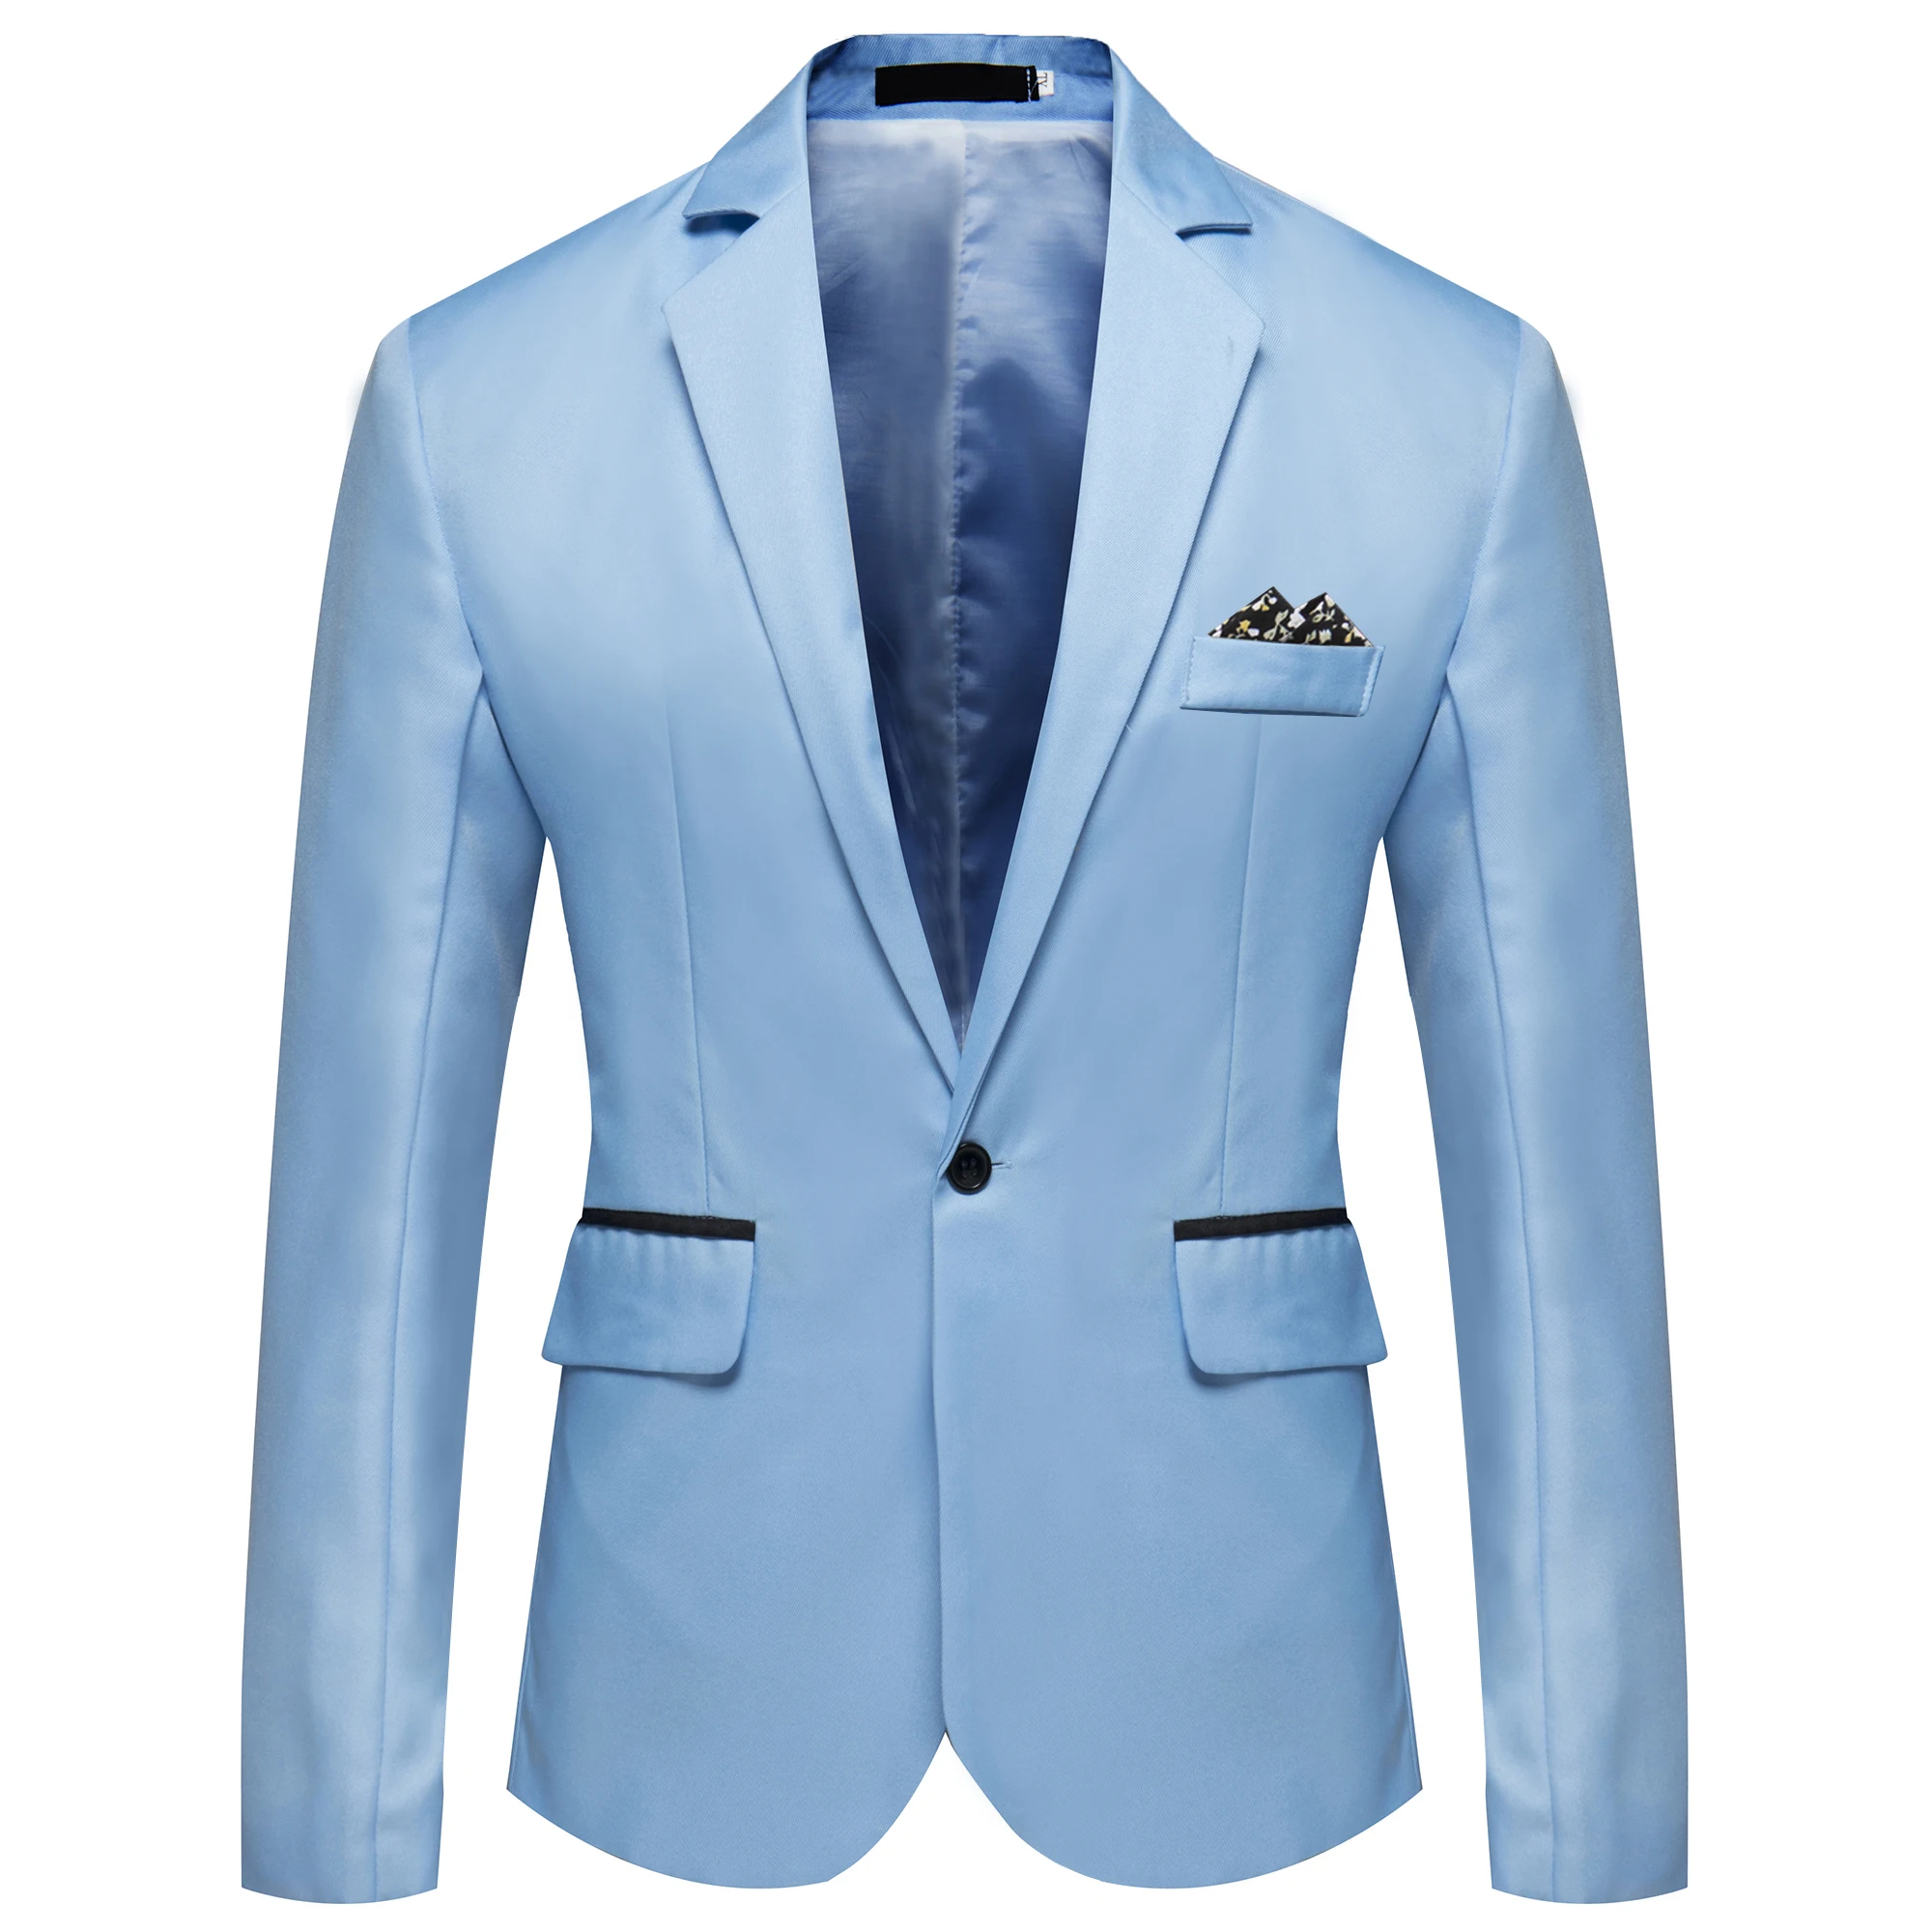 Suit Men Jacket 2019 New Men Handsome Young Student Small Suit Slim Fit Blazer Men Fashion Business Casual Dress Blazer Coat